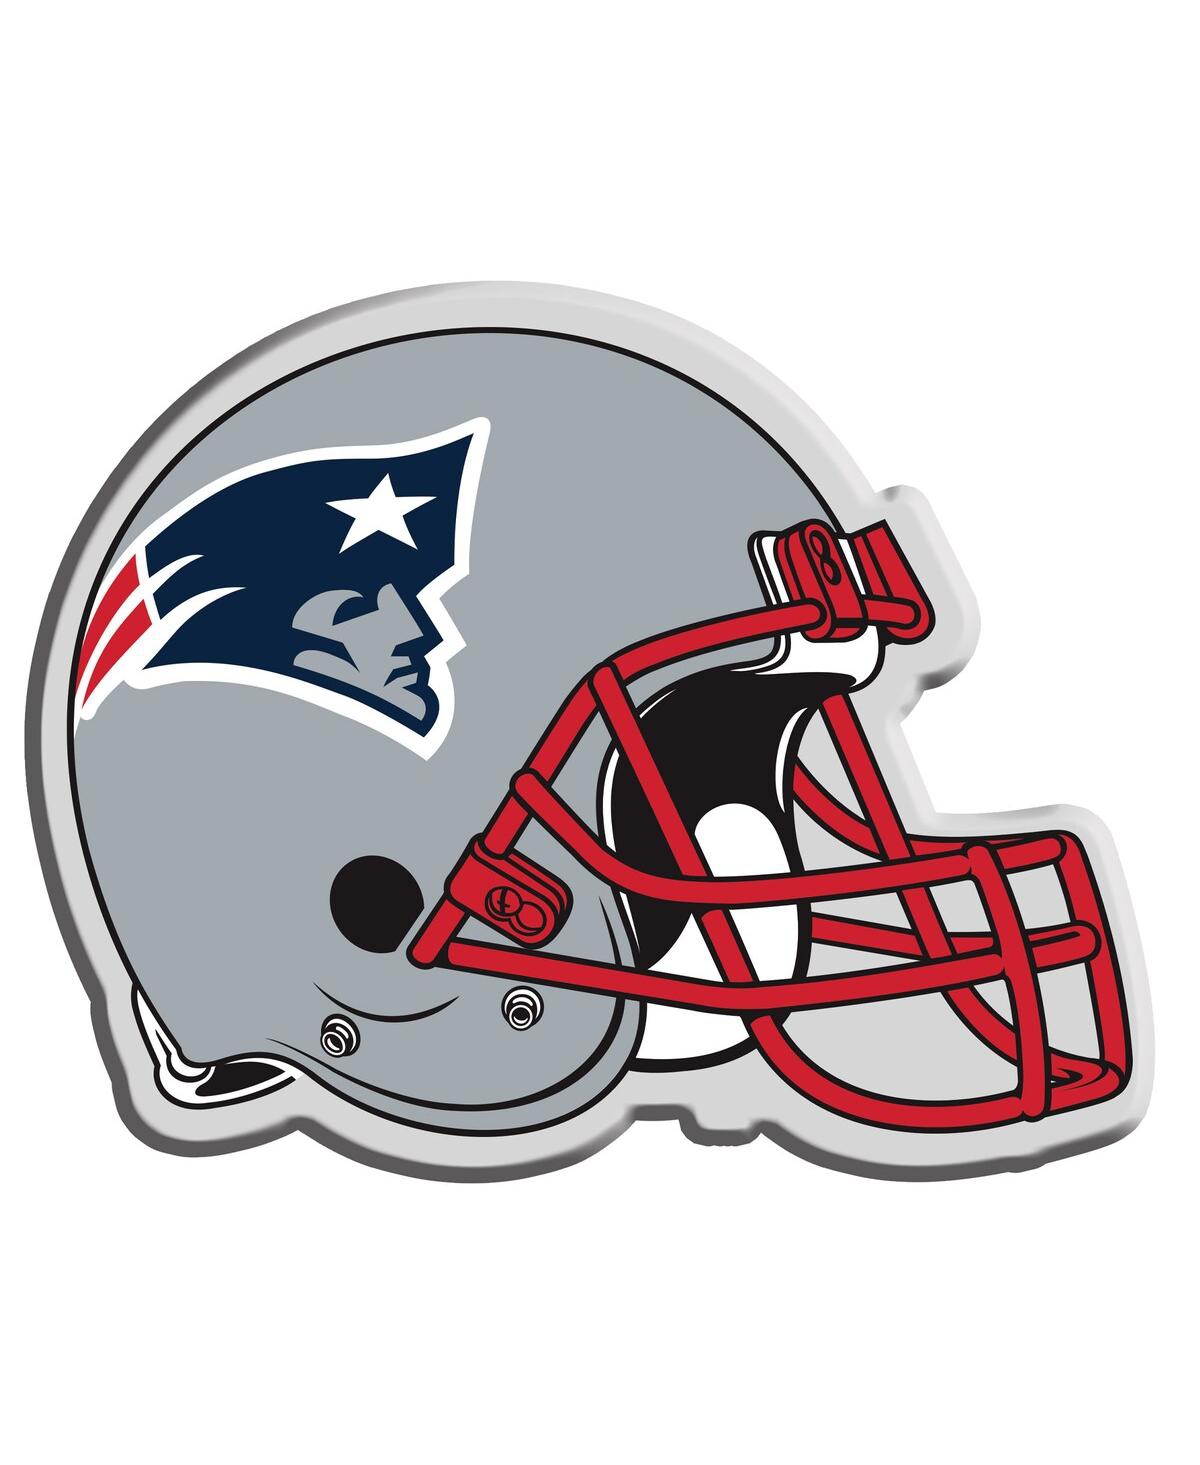 Memory Company New England Patriots Helmet Lamp In Gray